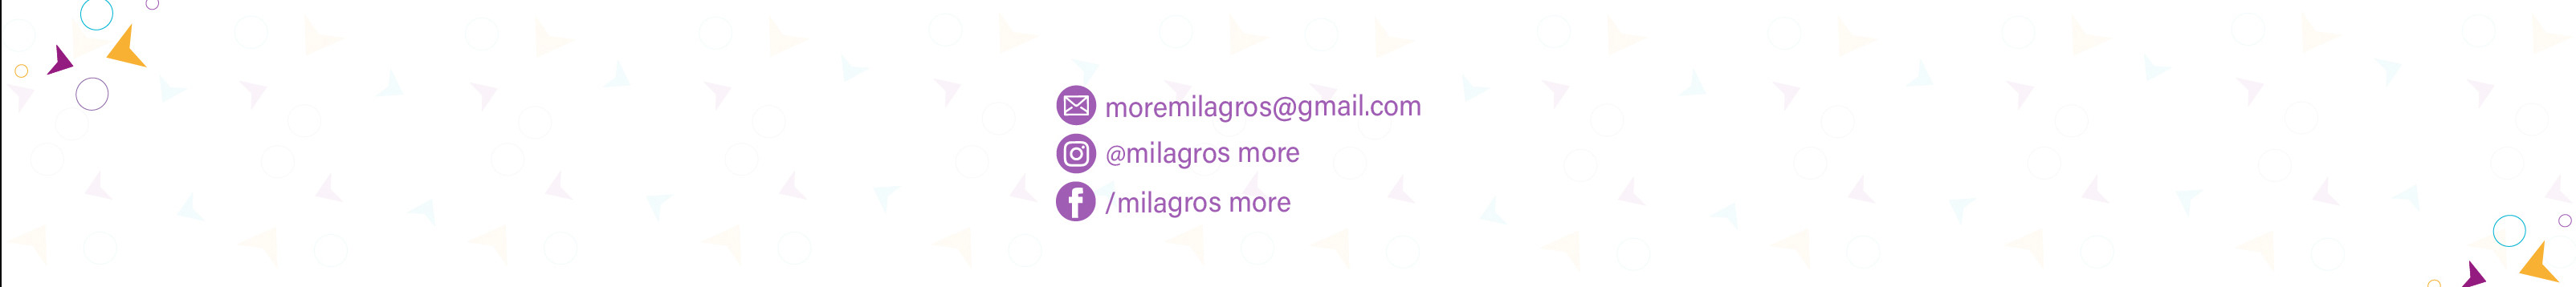 Milagros More Mogollón's profile banner